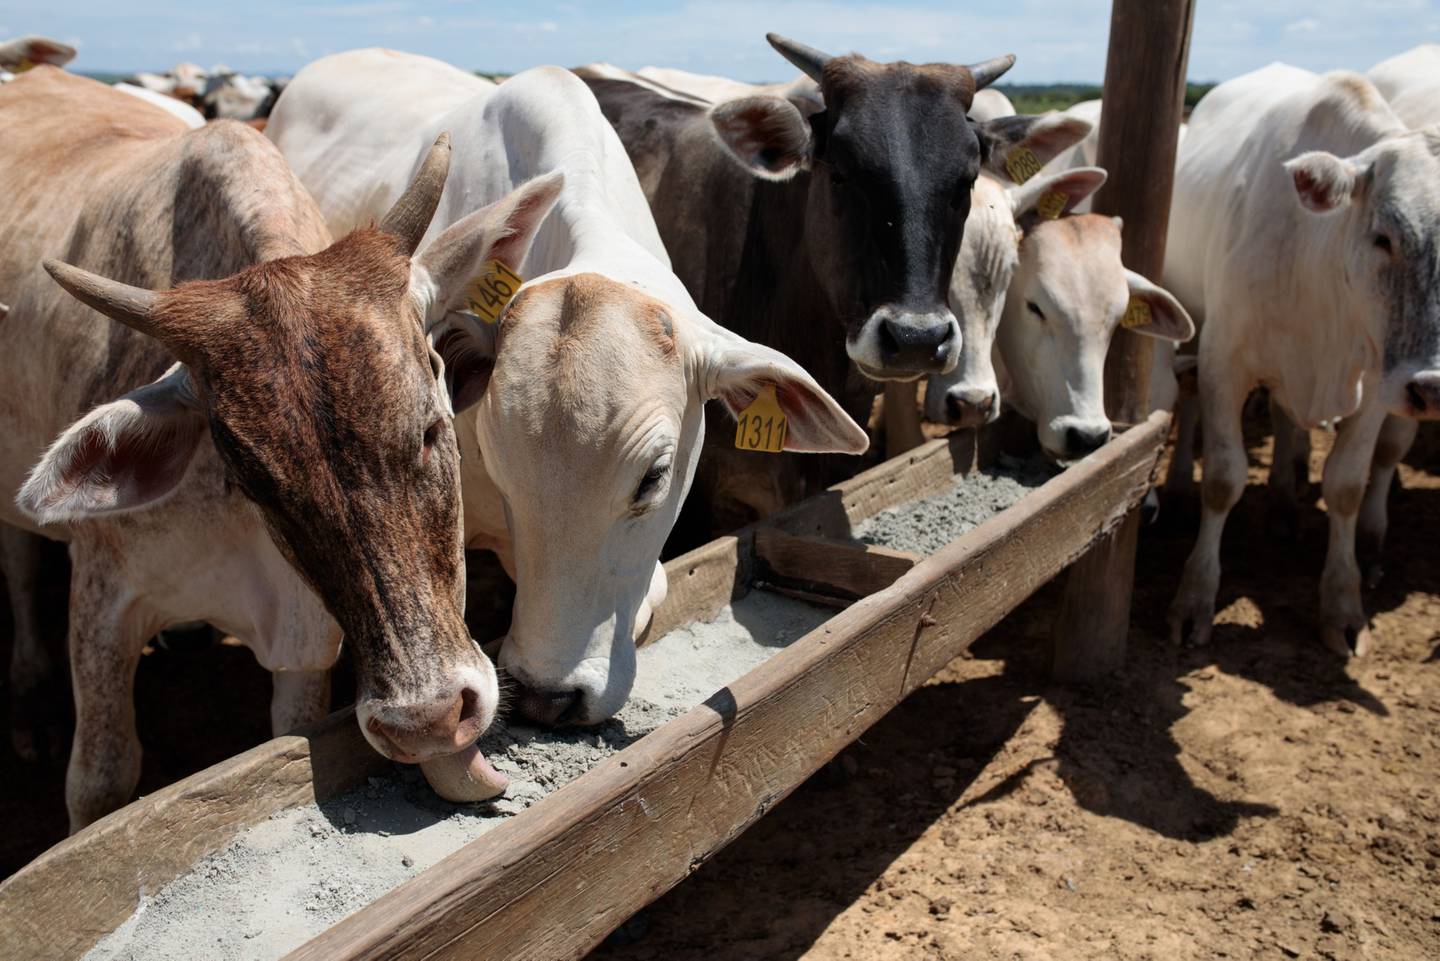 En Brasil, la alimentación animal -vector de la clásica enfermedad de las vacas locas- está prohibida desde los años 90.
dfd